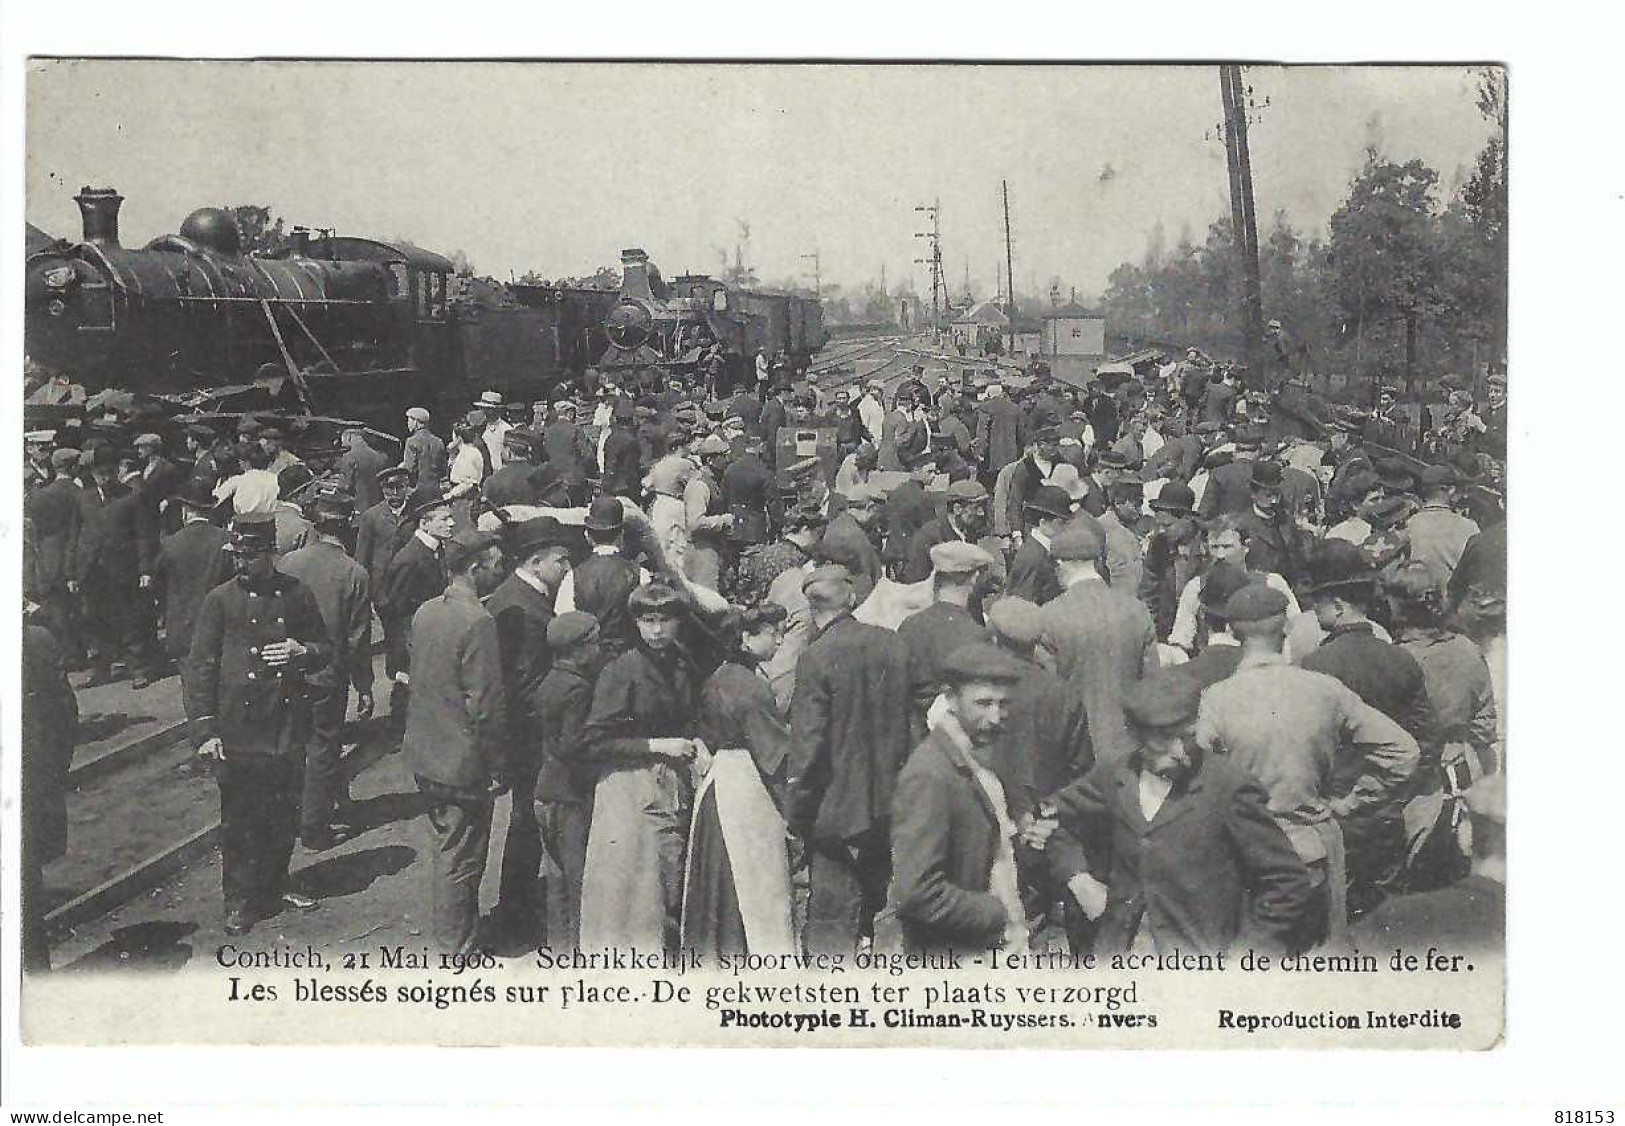 Contich  21 Mai 1908 - Terrible Accident De Chemin De Fer - De Gekwetsten Ter Plaatse Verzorgd - Kontich